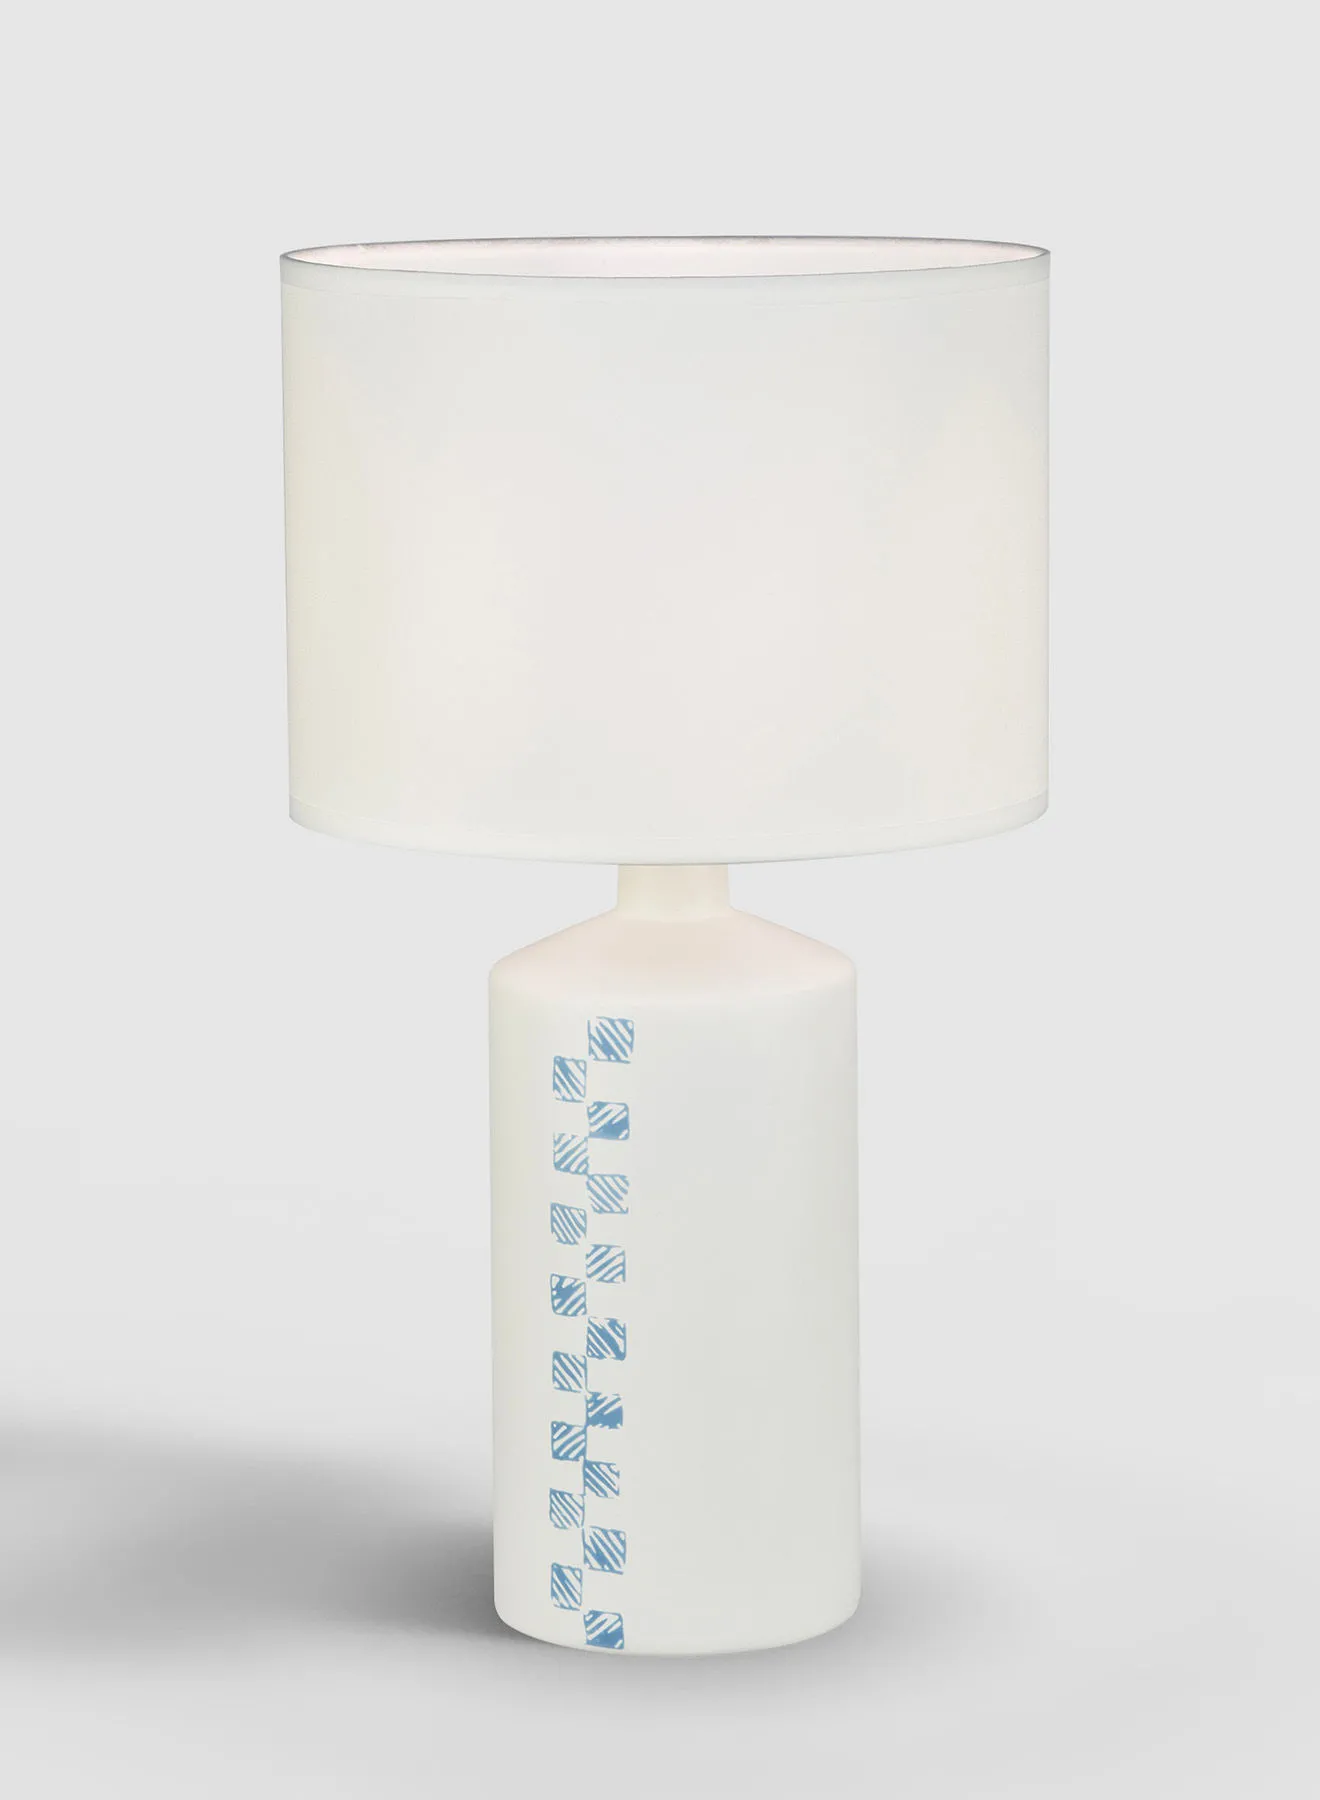 مصباح طاولة من السيراميك تيجادو ، مادة فريدة من نوعها ذات جودة فاخرة لمنزل أنيق ومثالي AT16107 أزرق / أوف وايت 25.5 × 46.5